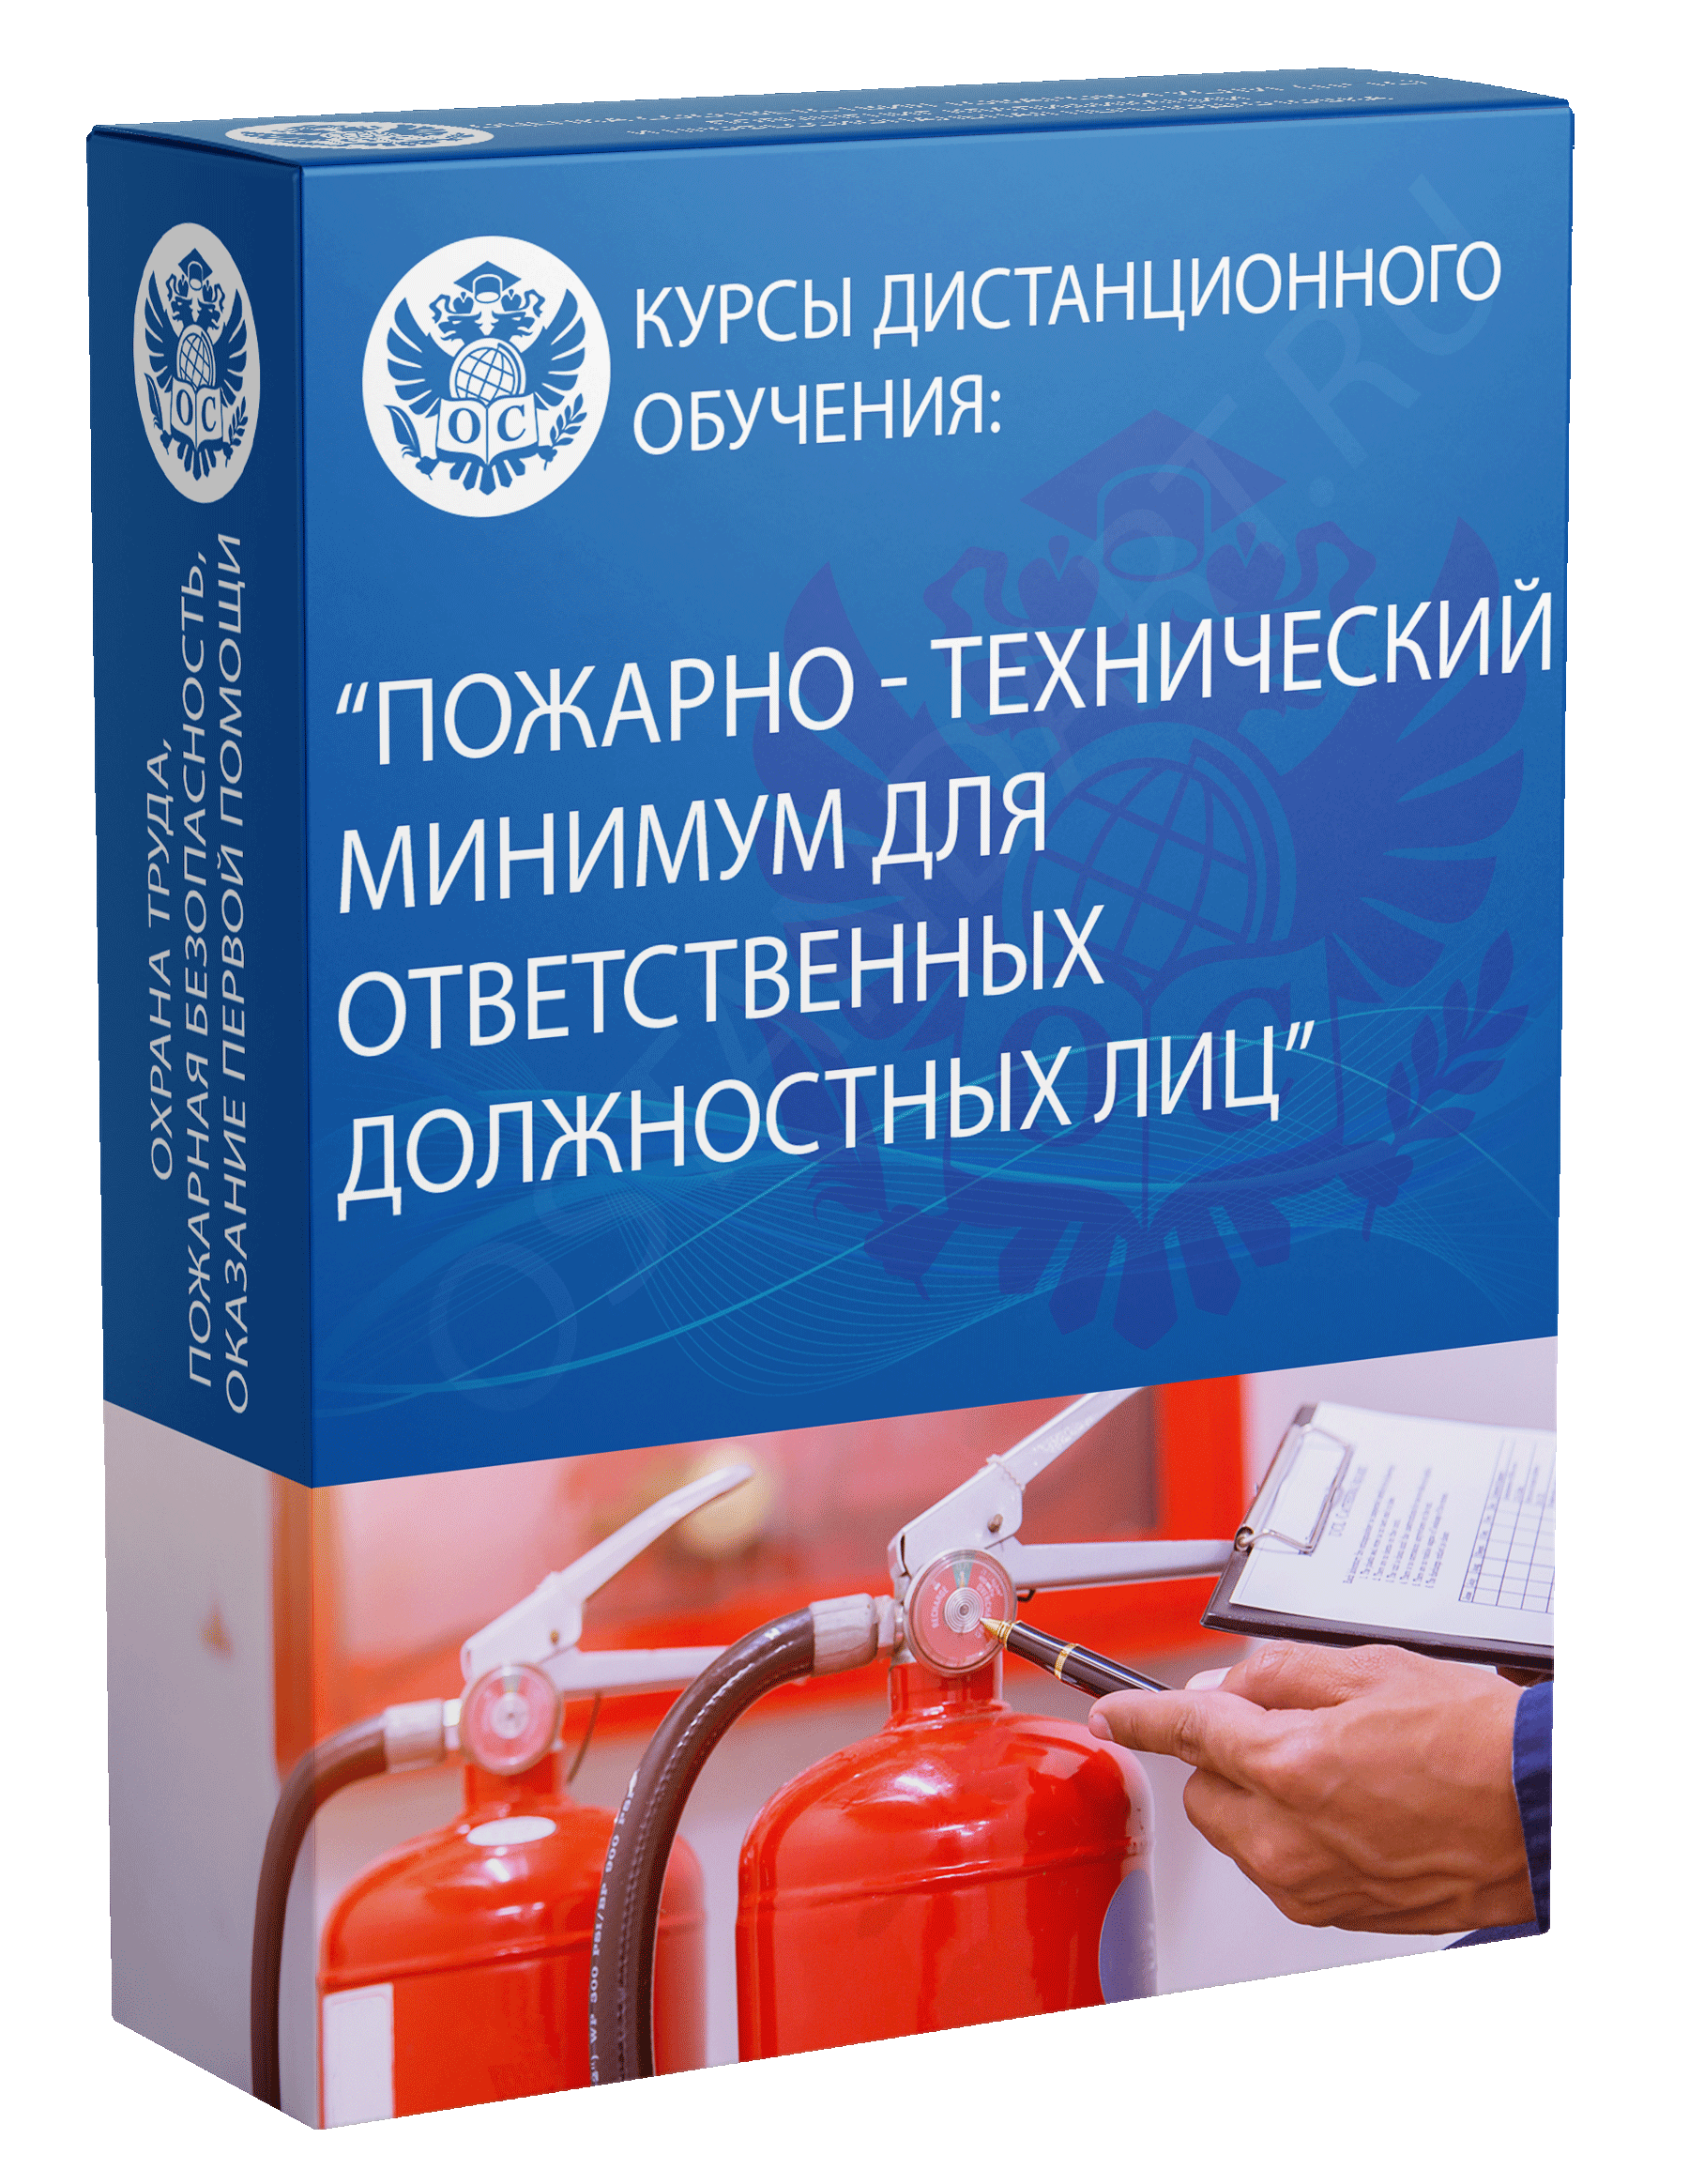 Пожарно-технический минимум для ответственных должностных лиц курс обучения